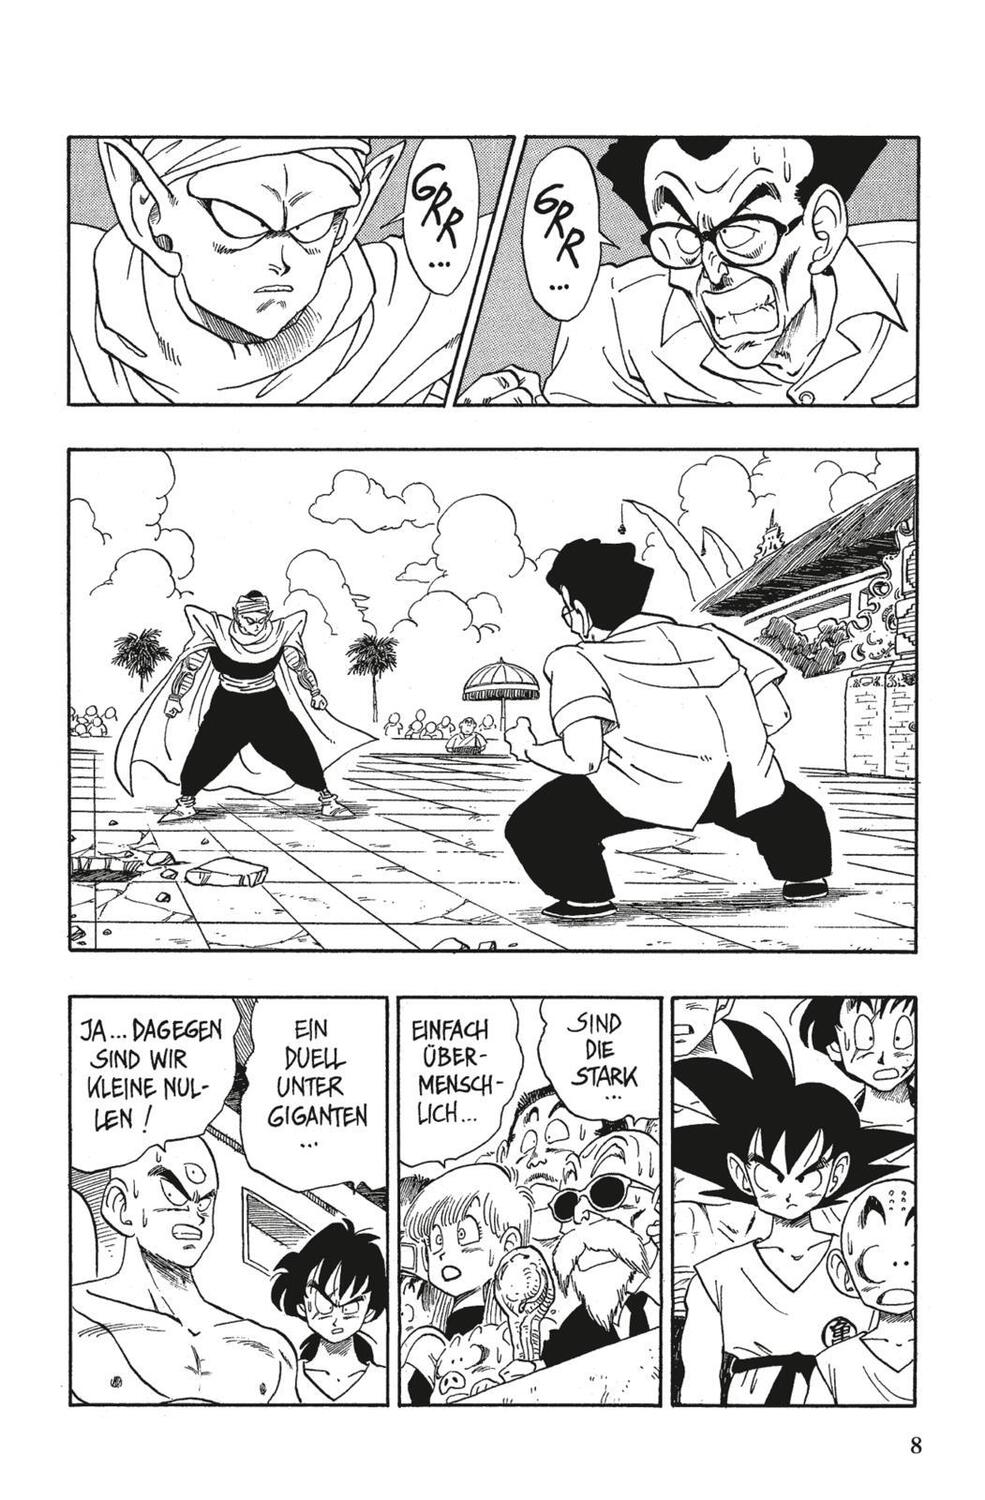 Bild: 9783551733085 | Dragon Ball 16. Duell der Giganten | Akira Toriyama | Taschenbuch